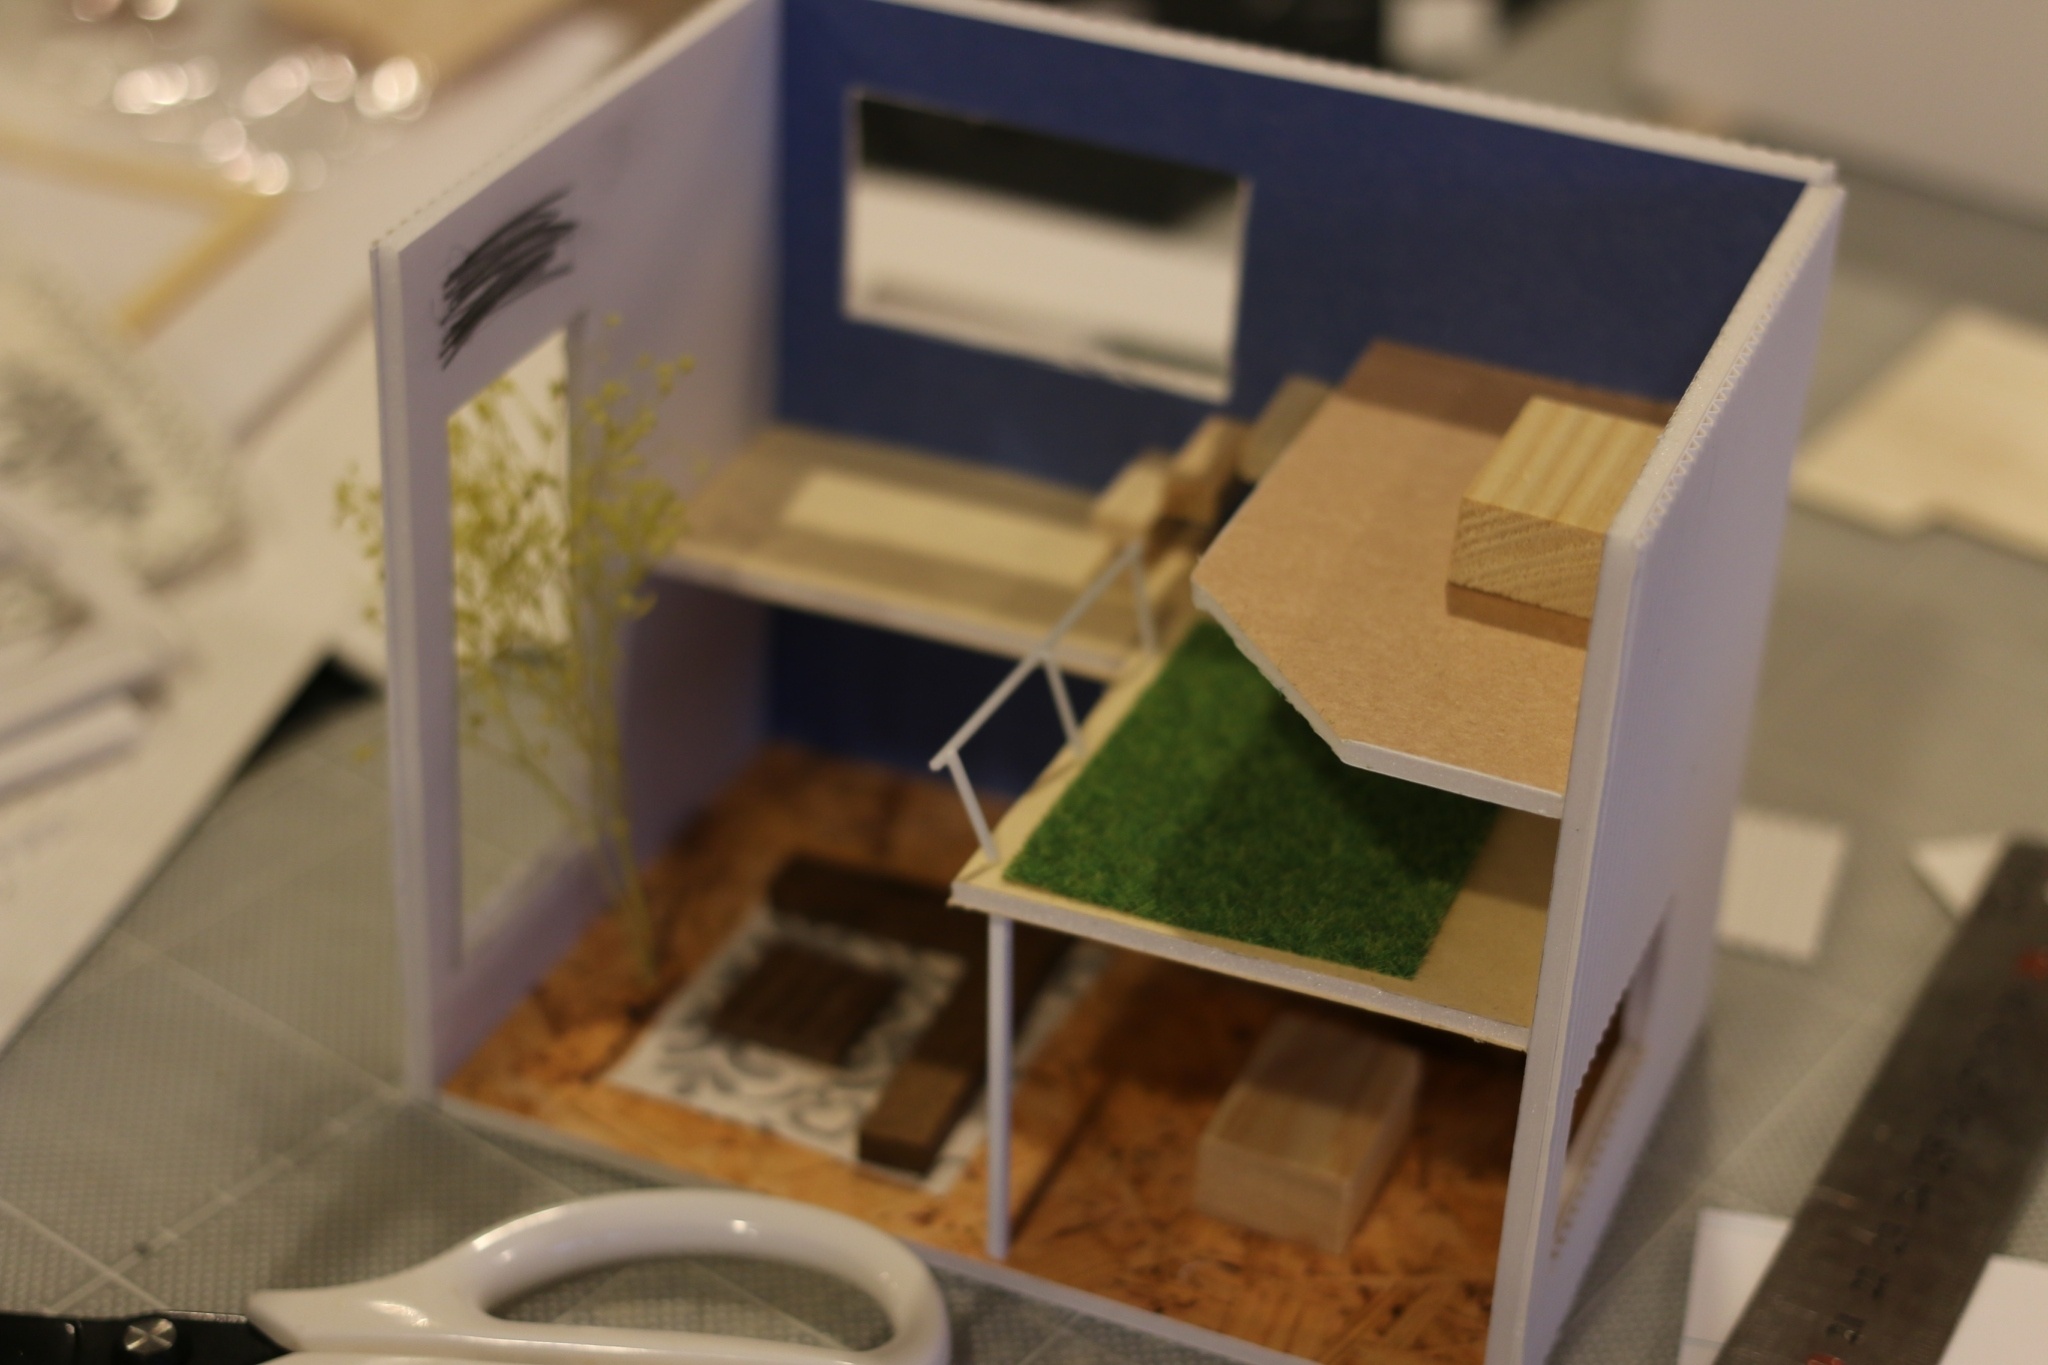 【募集終了】ミニチュアの家の模型と都市を作る体験学習型ワークショップの写真1枚目